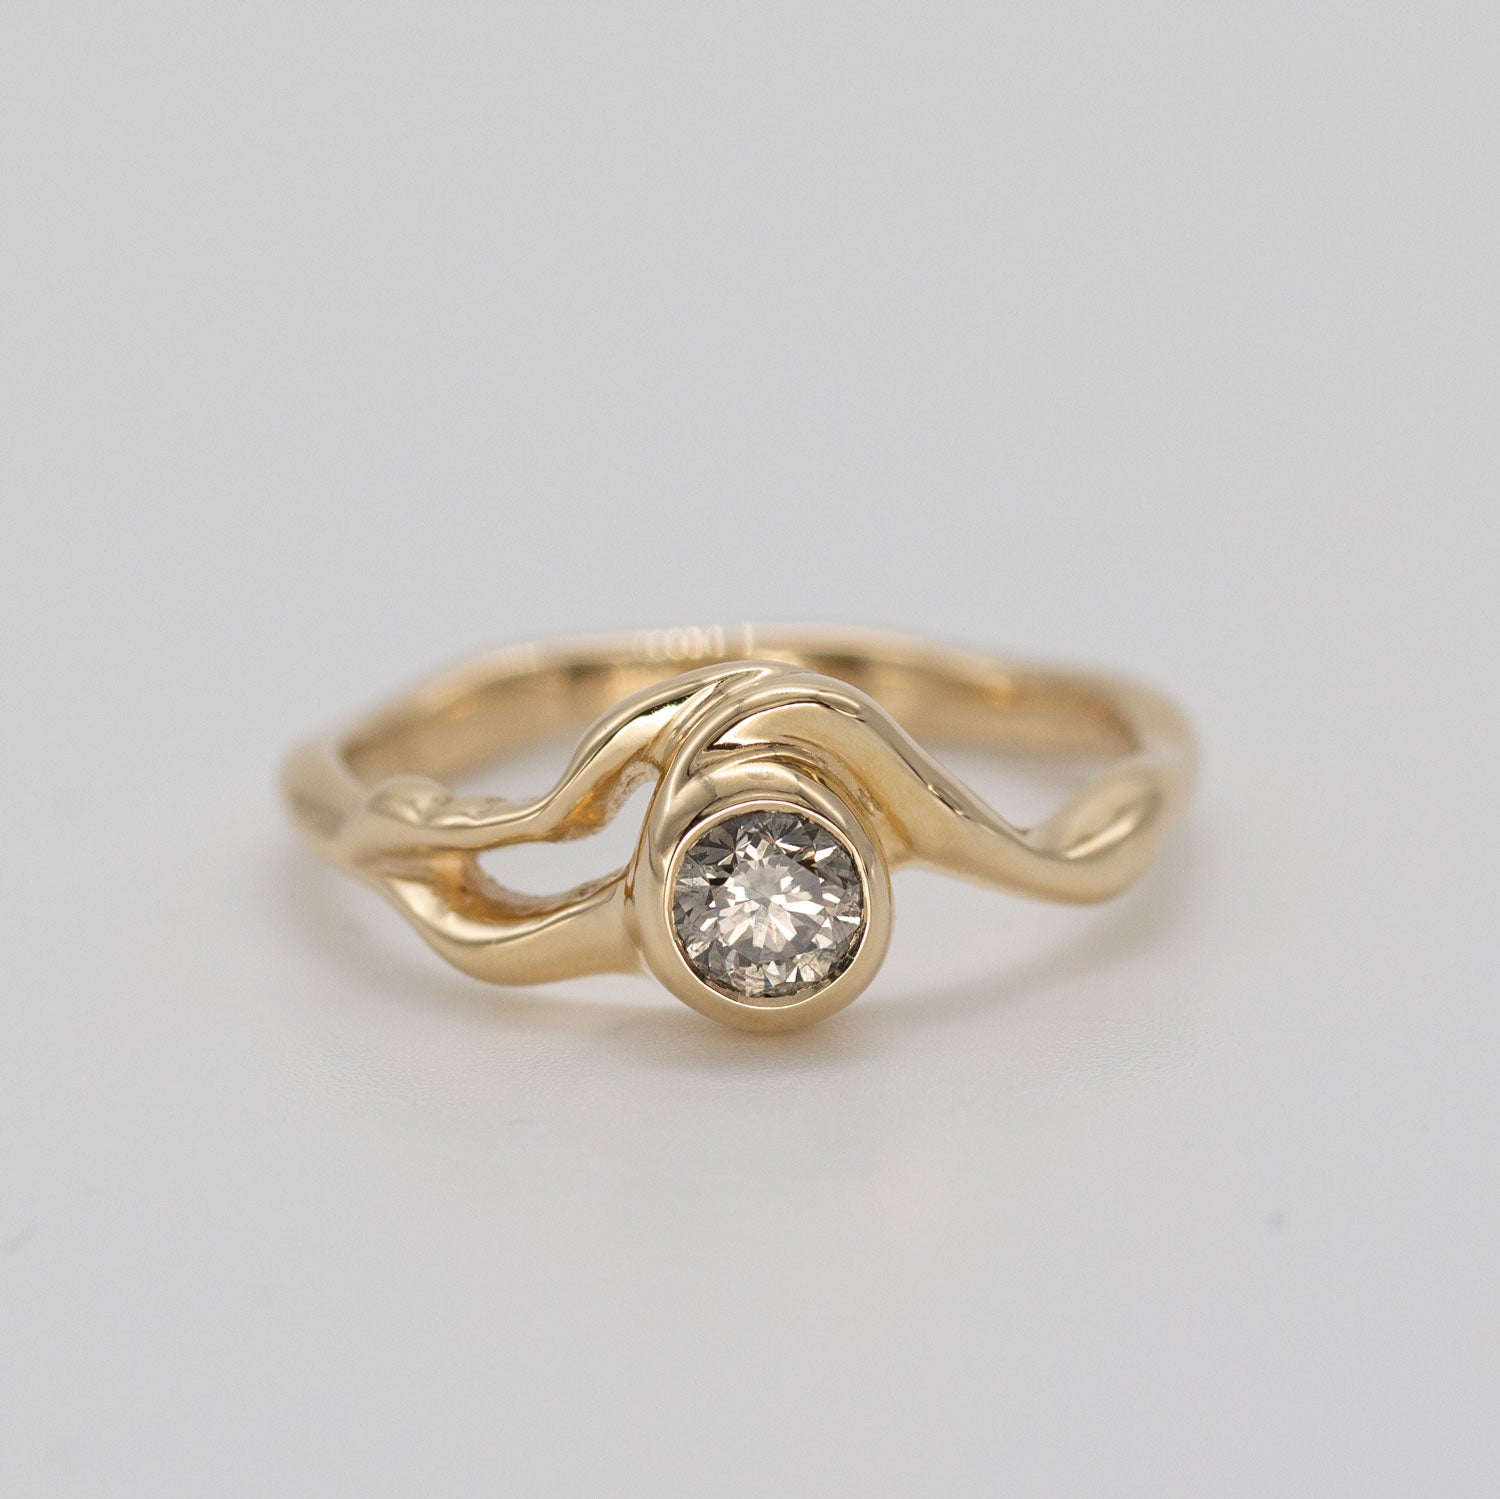 Organisk formgivet ring i guld med stor champagnefarvet diamant placeret i centrum af ringen på grå baggrund. Ud fra diamanten forgrener formgivningen sig rundt i ring skiven. Set forfra.